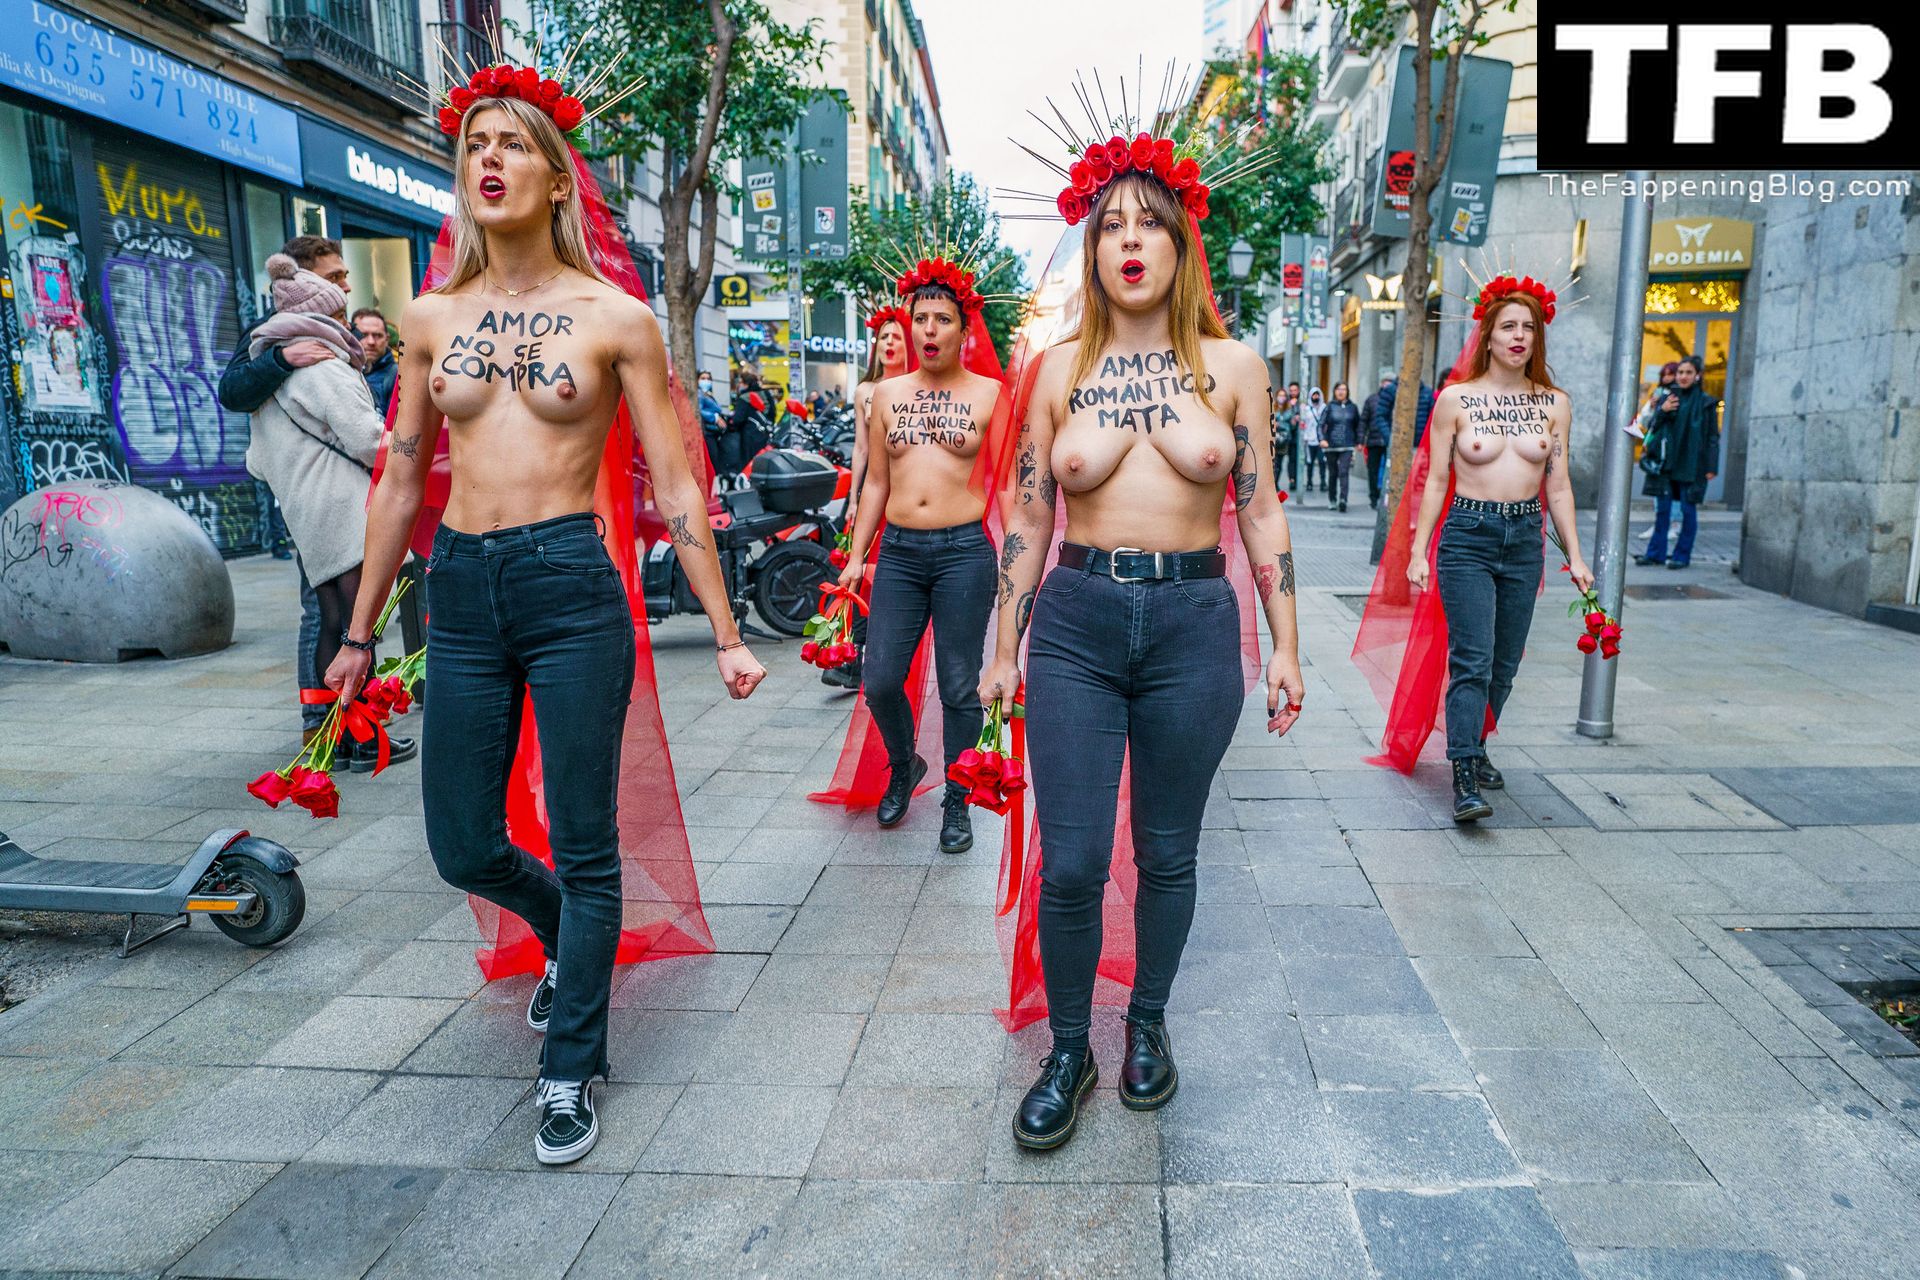 FEMEN-Topless-Girls-The-Fappening-Blog-7.jpg